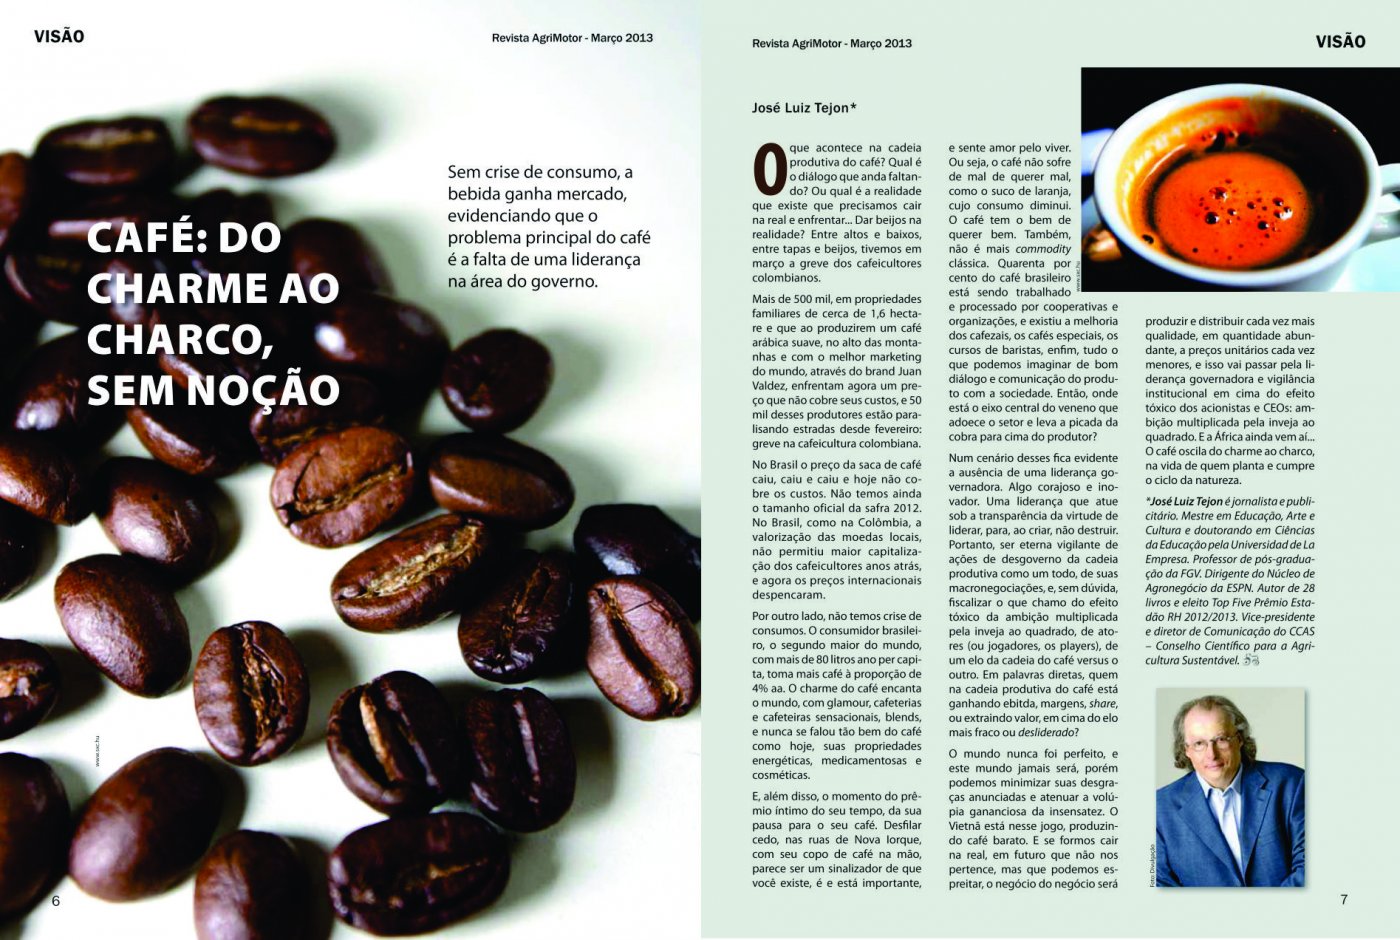 Revista Agrimotor publica artigo do Vice Presidente e Diretor de Comunicação do CCAS